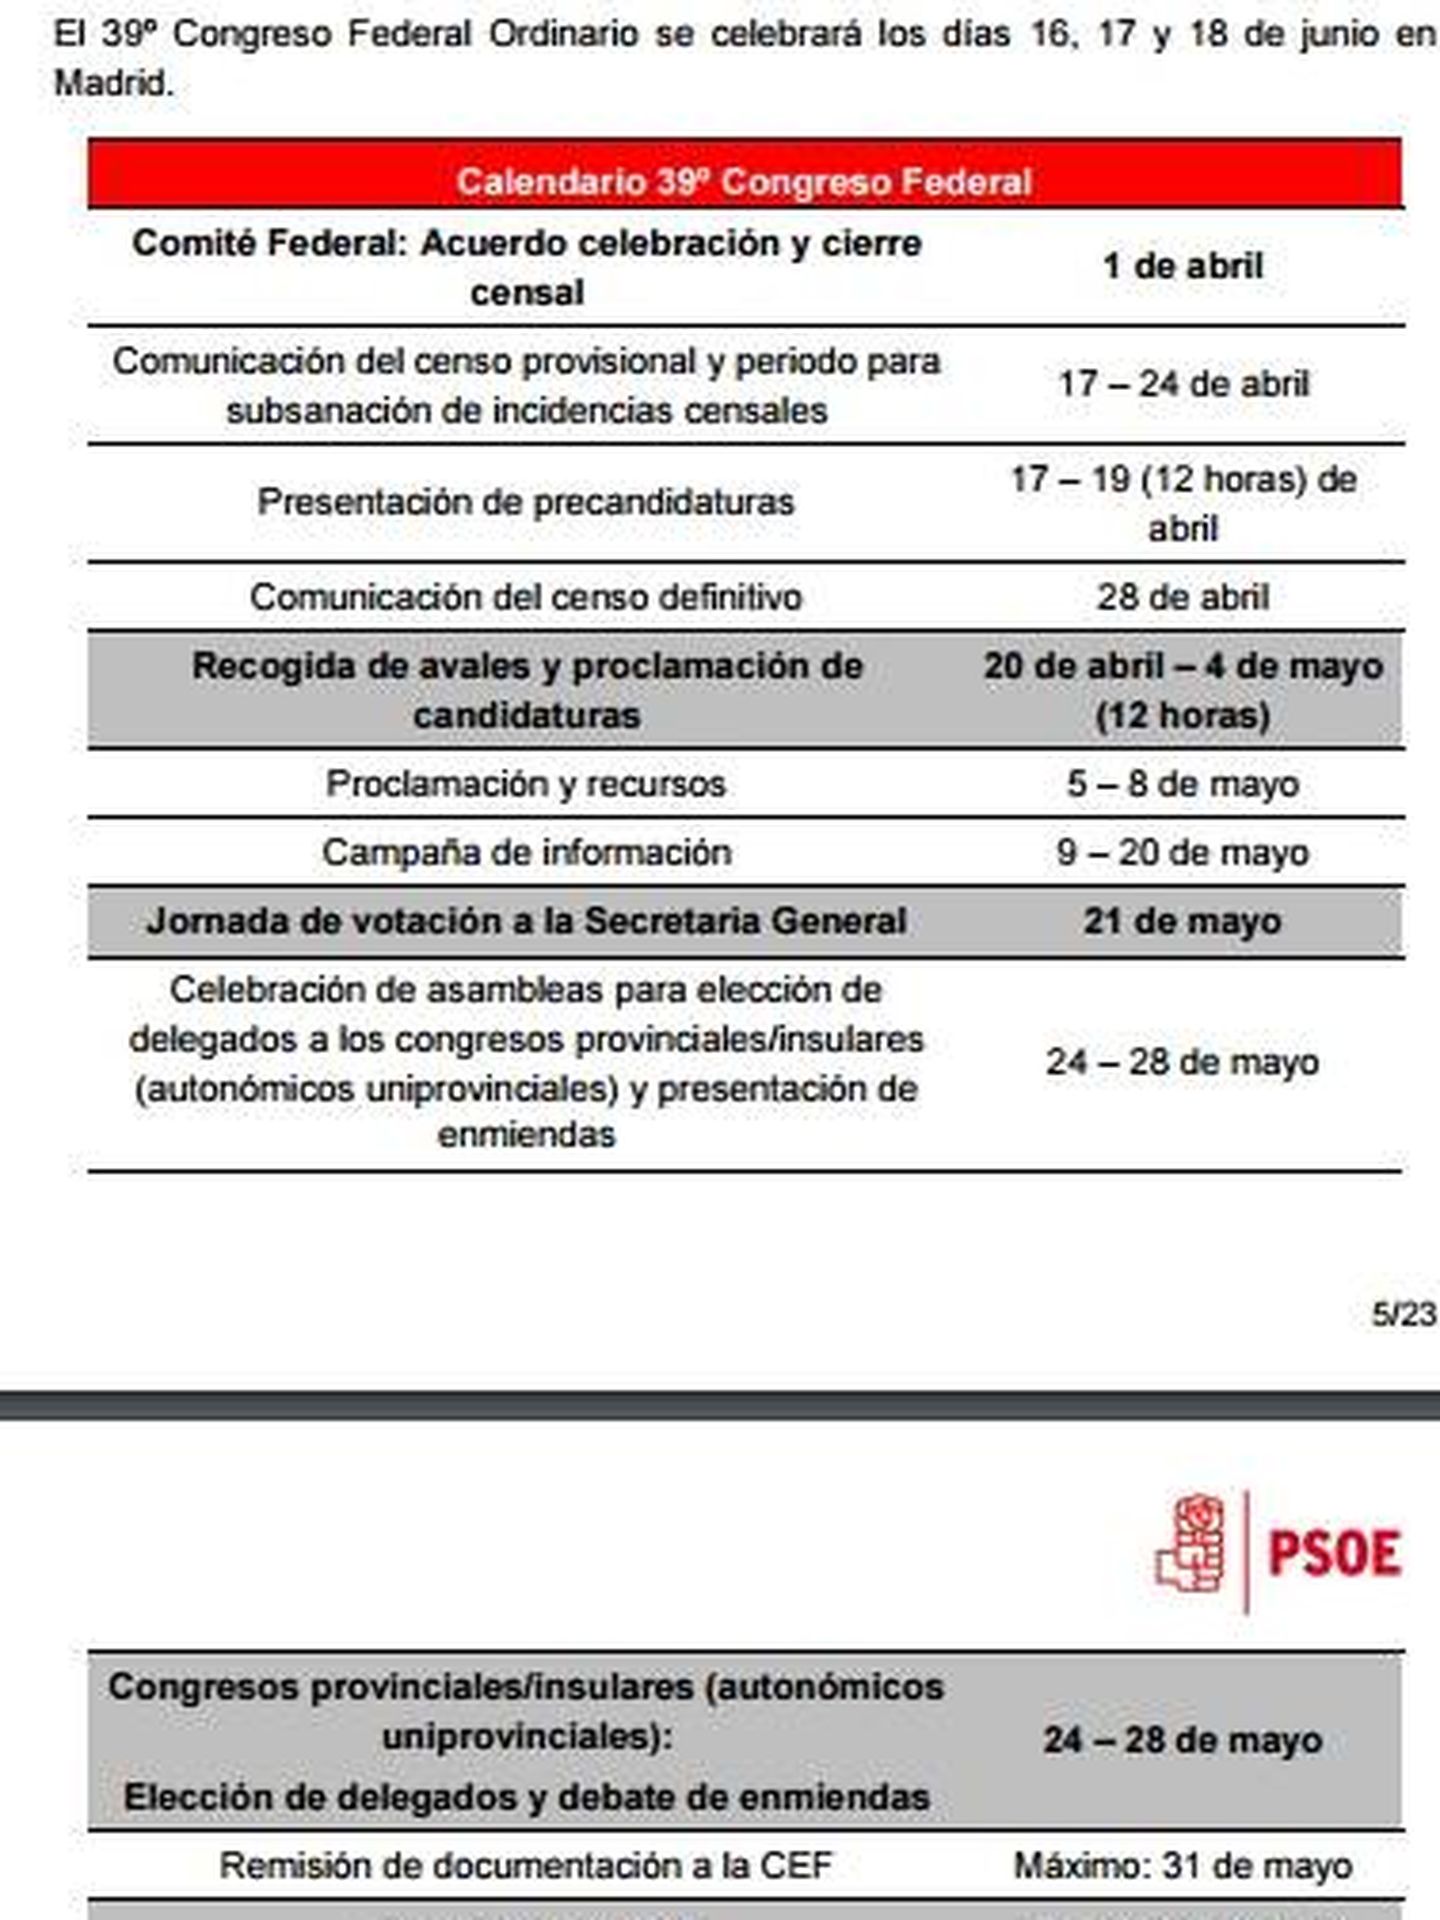 El calendario completo del 39º Congreso del PSOE. (EC)